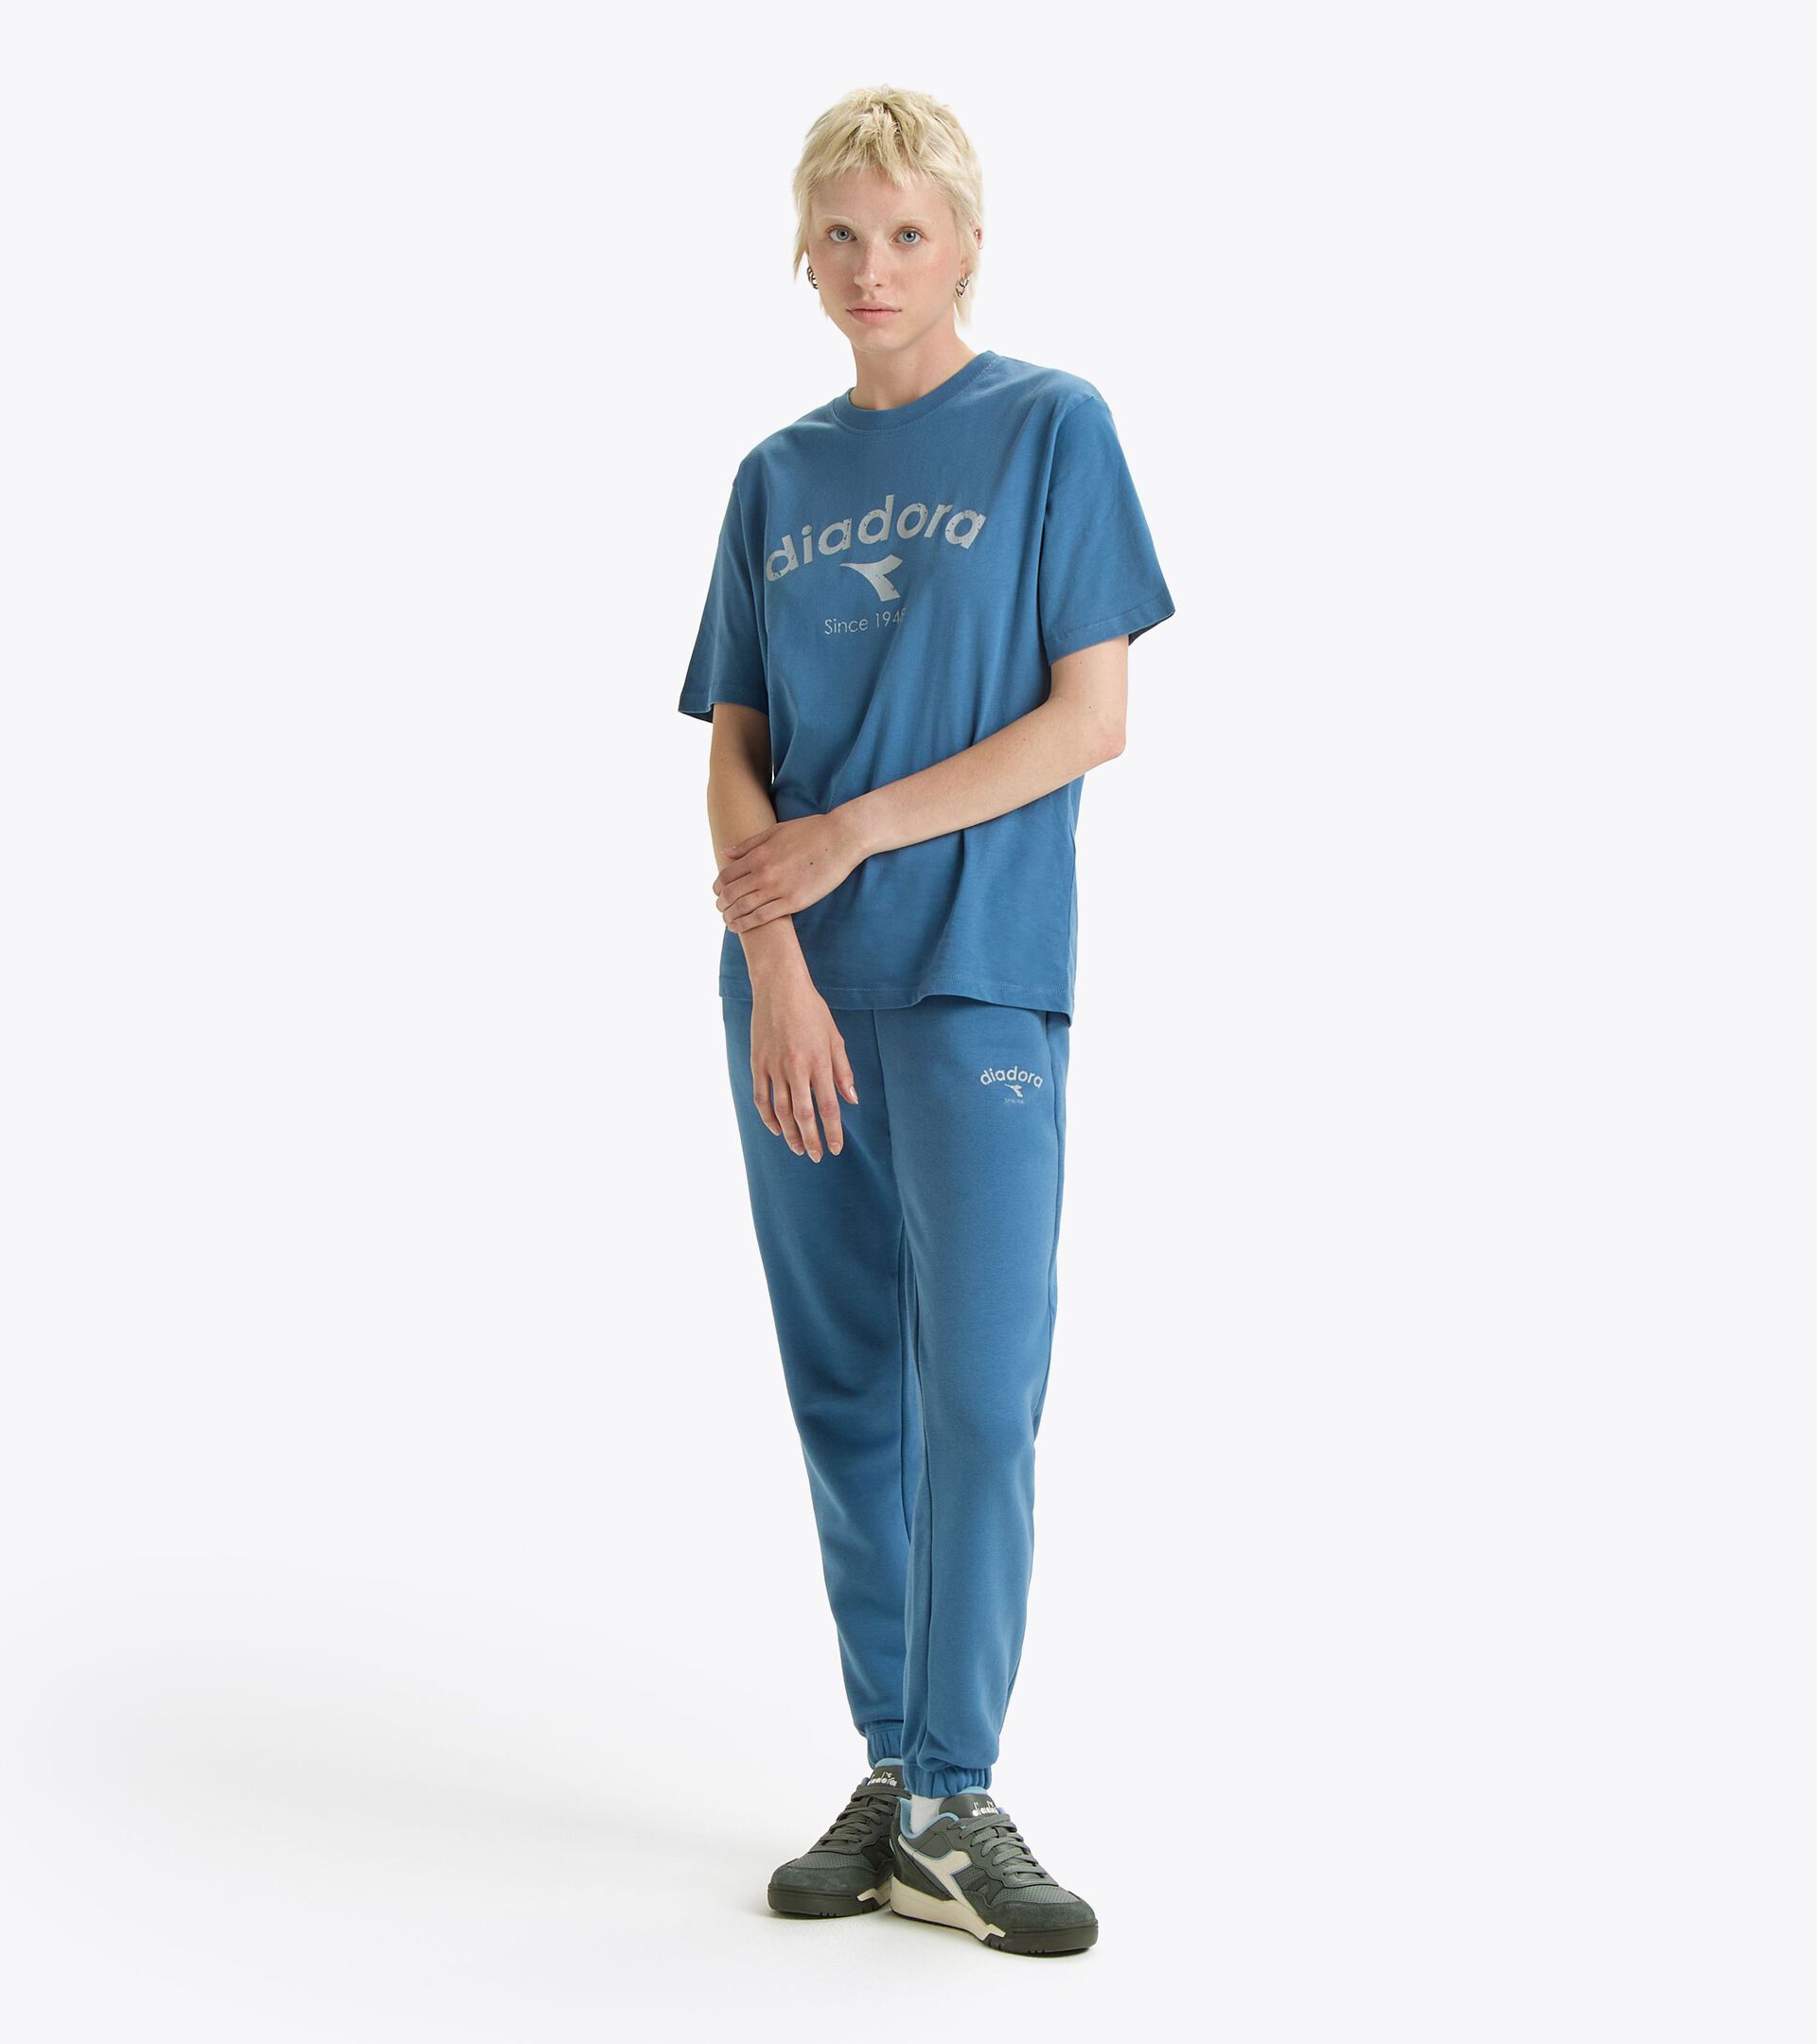 Sweatpants - Gender Neutral PANTS ATHL. LOGO COLONEL BLUE - Diadora